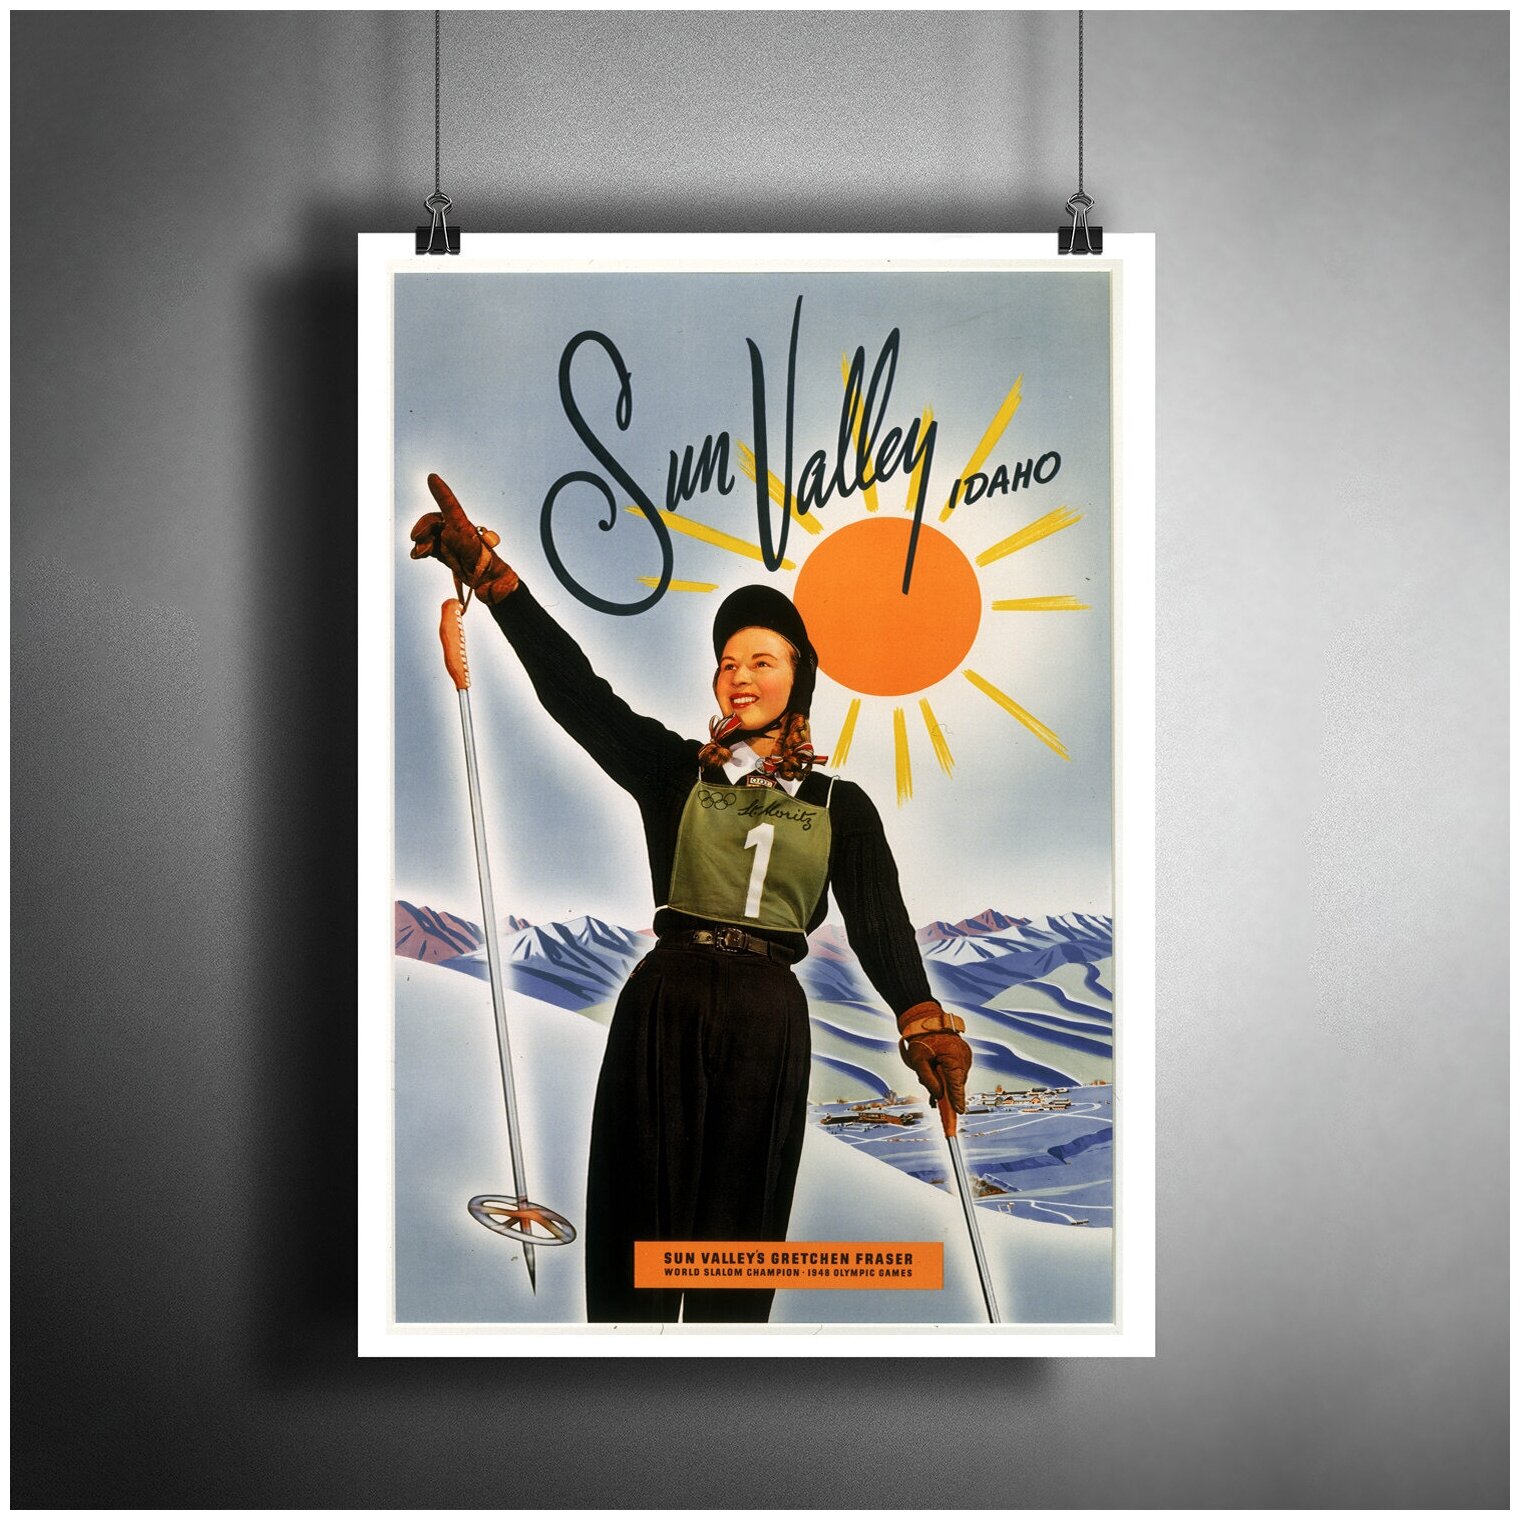 Постер плакат для интерьера "Винтажный постер: Олимпийские игры, Сан-Валли, Айдахо. Горные лыжи"/ Декор дома, офиса, комнаты A3 (297 x 420 мм)